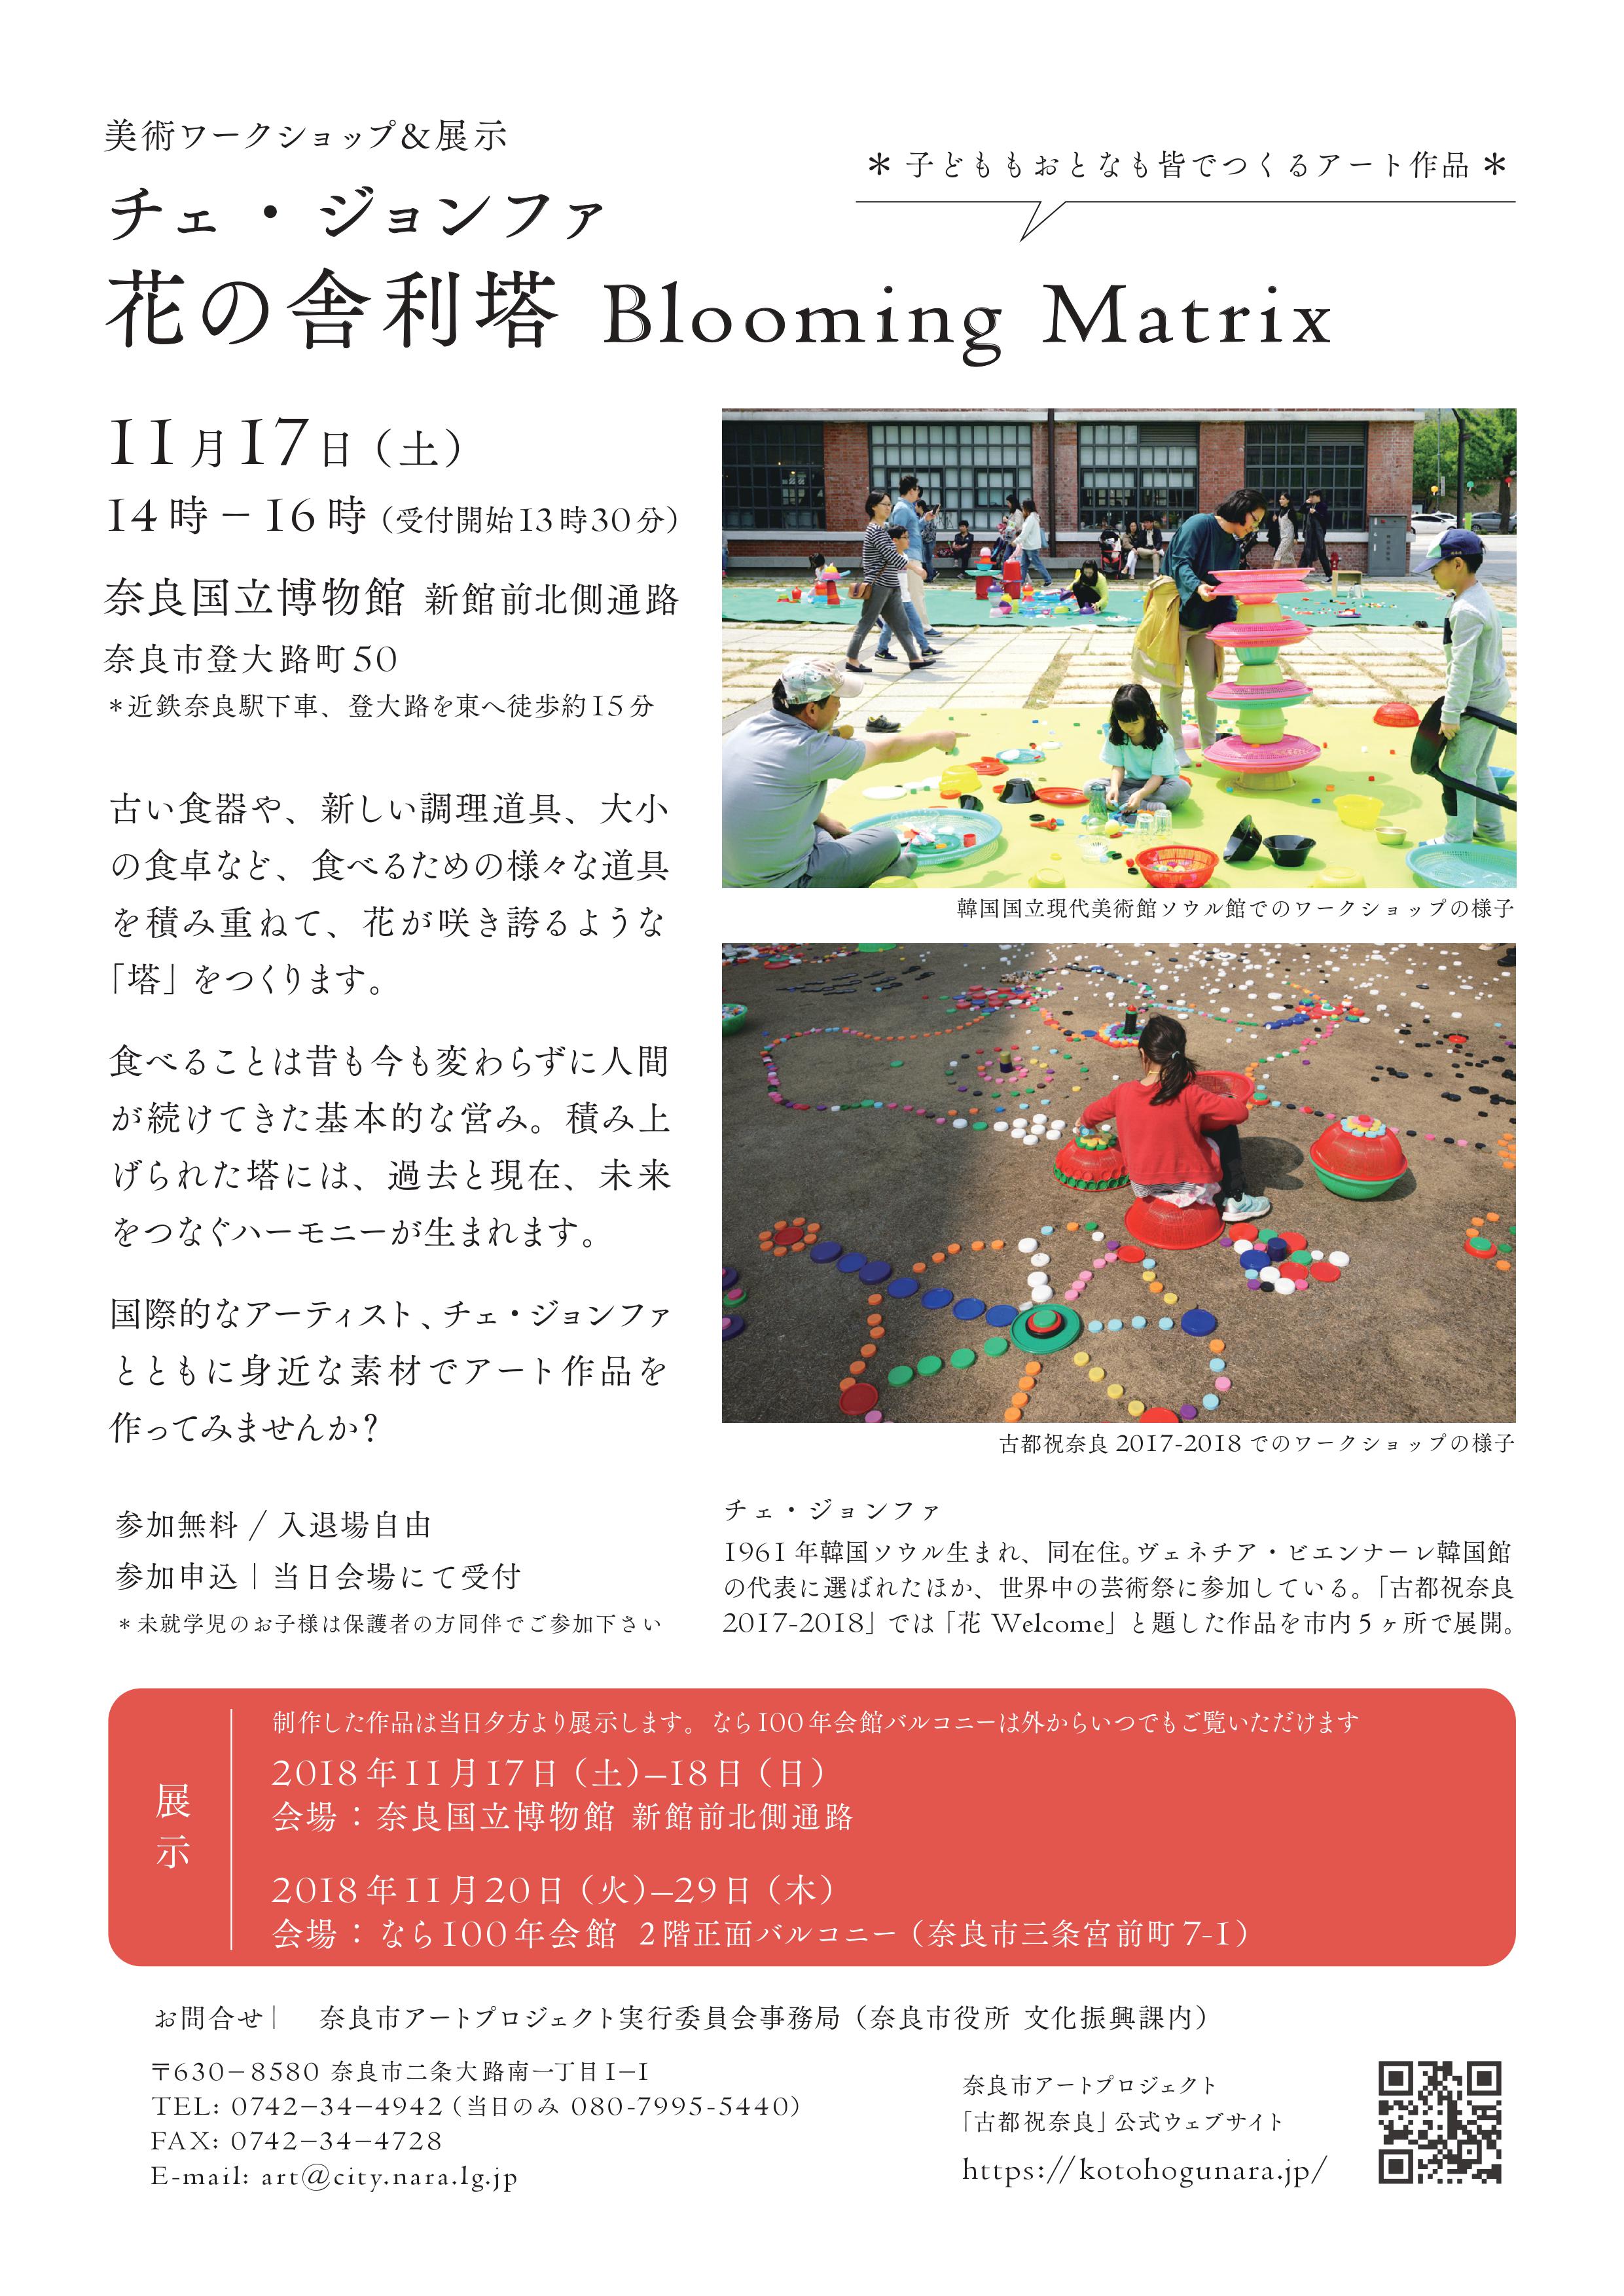 奈良市アートプロジェクト「古都祝奈良2018-2019」 チェ・ジョンファ「花の舎利塔 Blooming Matrix」(美術ワークショップ&作品展示)について(平成30年11月13日発表)の画像2